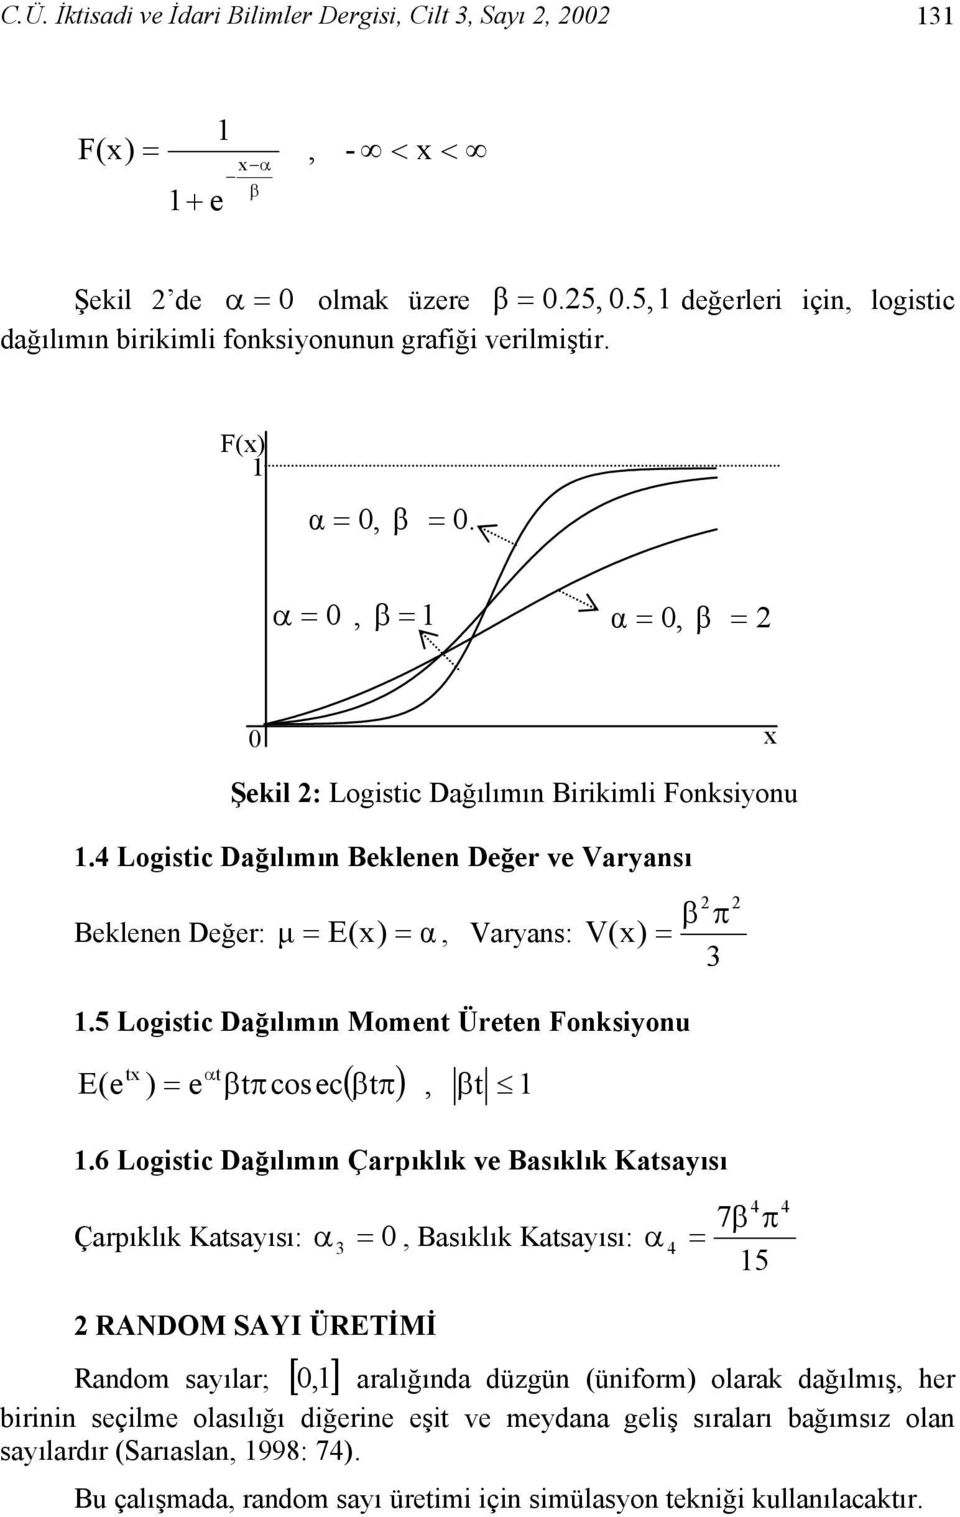 5 Logistic Dağılımın Moment Üreten Fonksiyonu E(e tx t ) = e α tπcosec ( tπ), t.